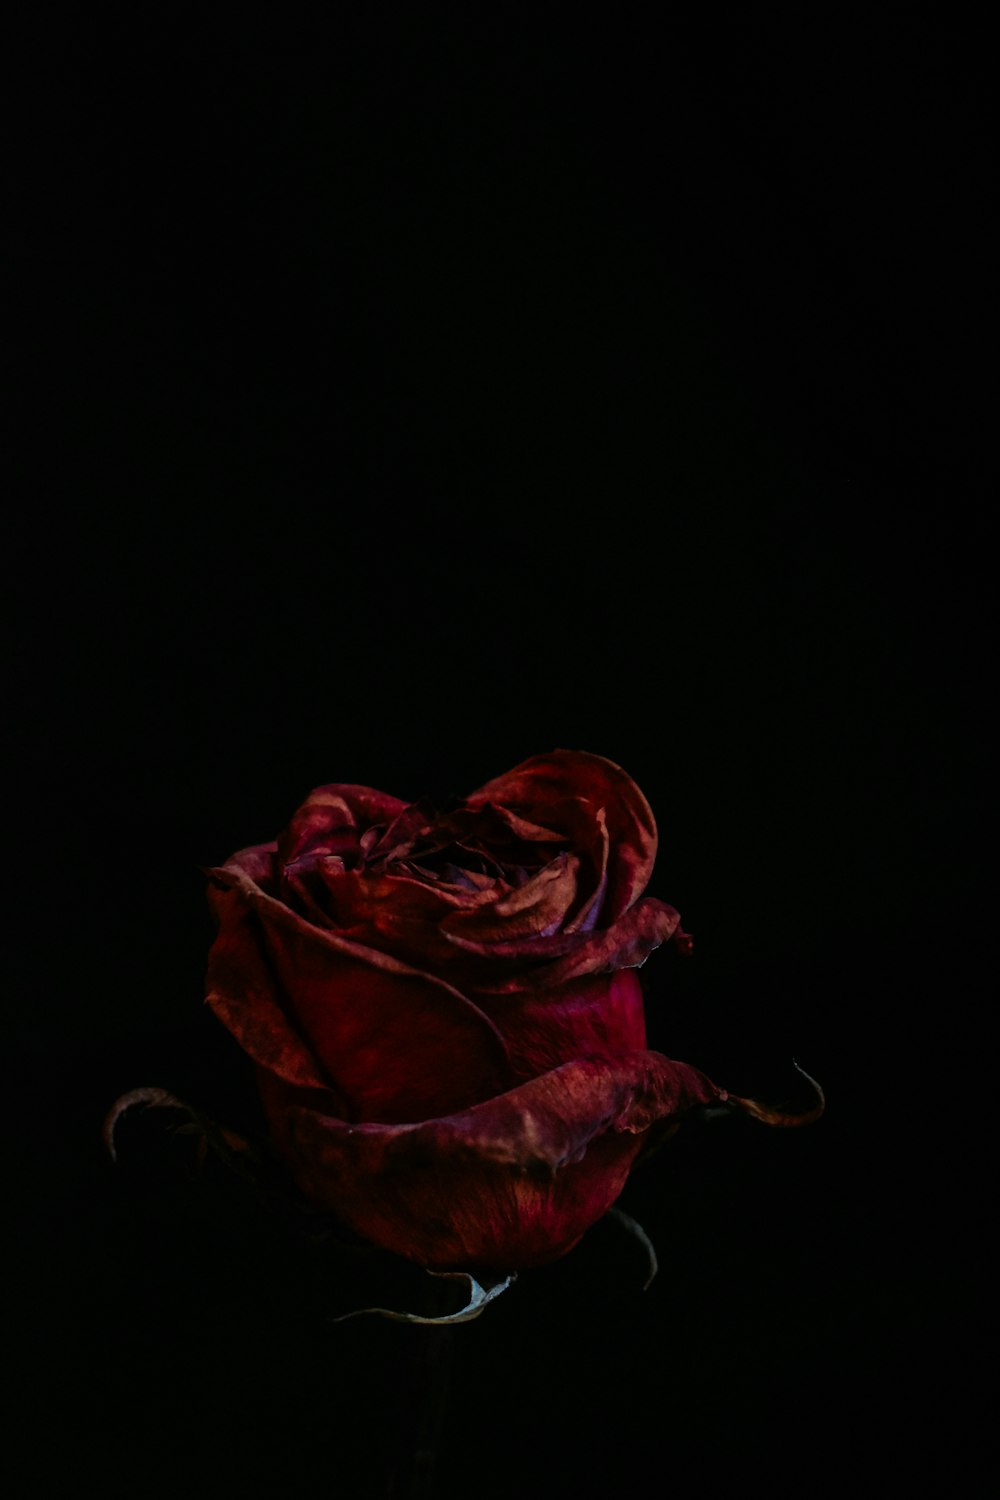 Rosa rossa su sfondo nero foto – Nero Immagine gratuita su Unsplash